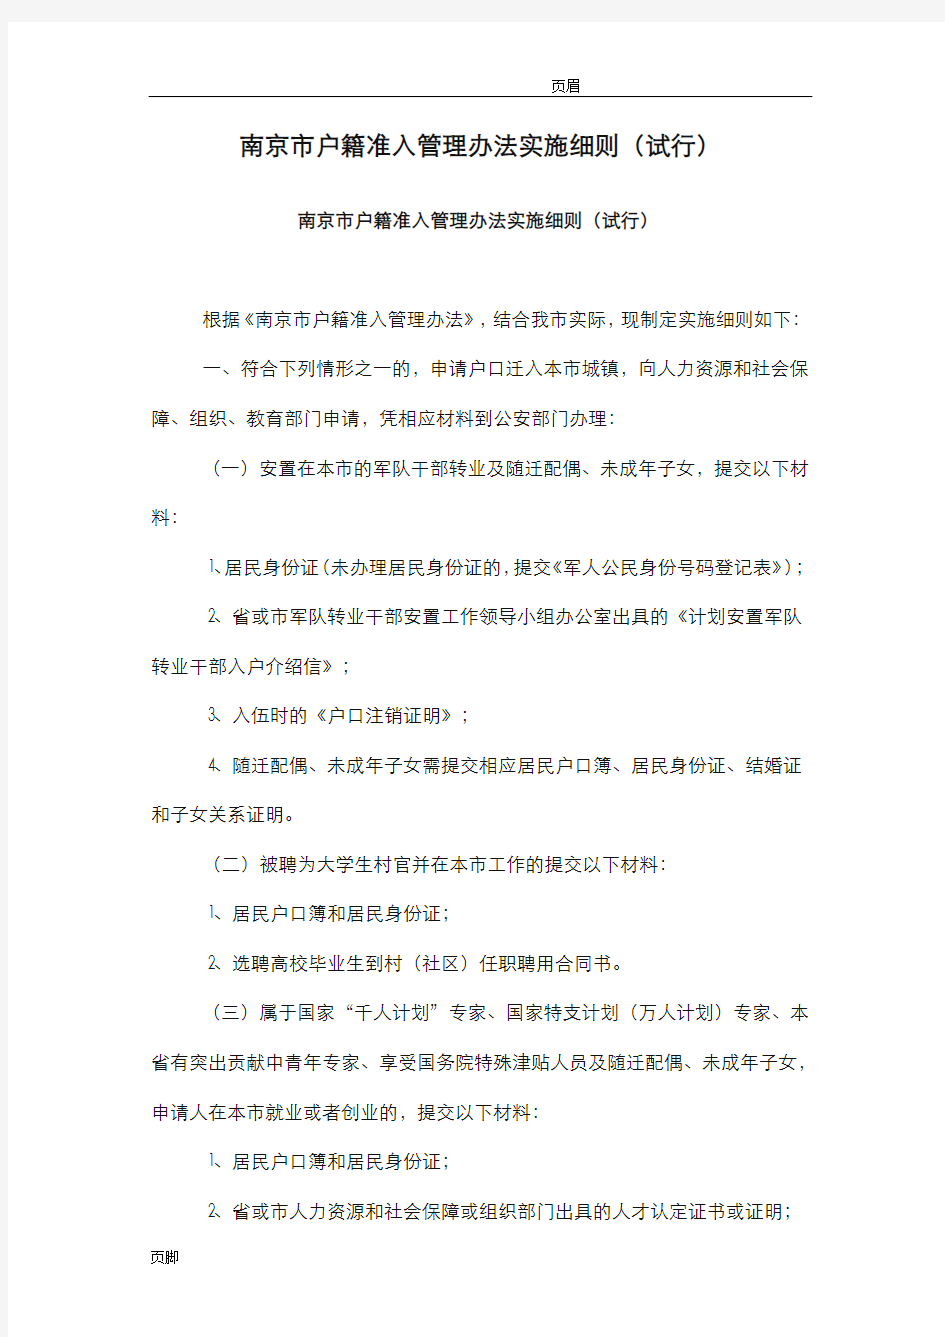 南京市户籍准入管理办法实施细则(试行)